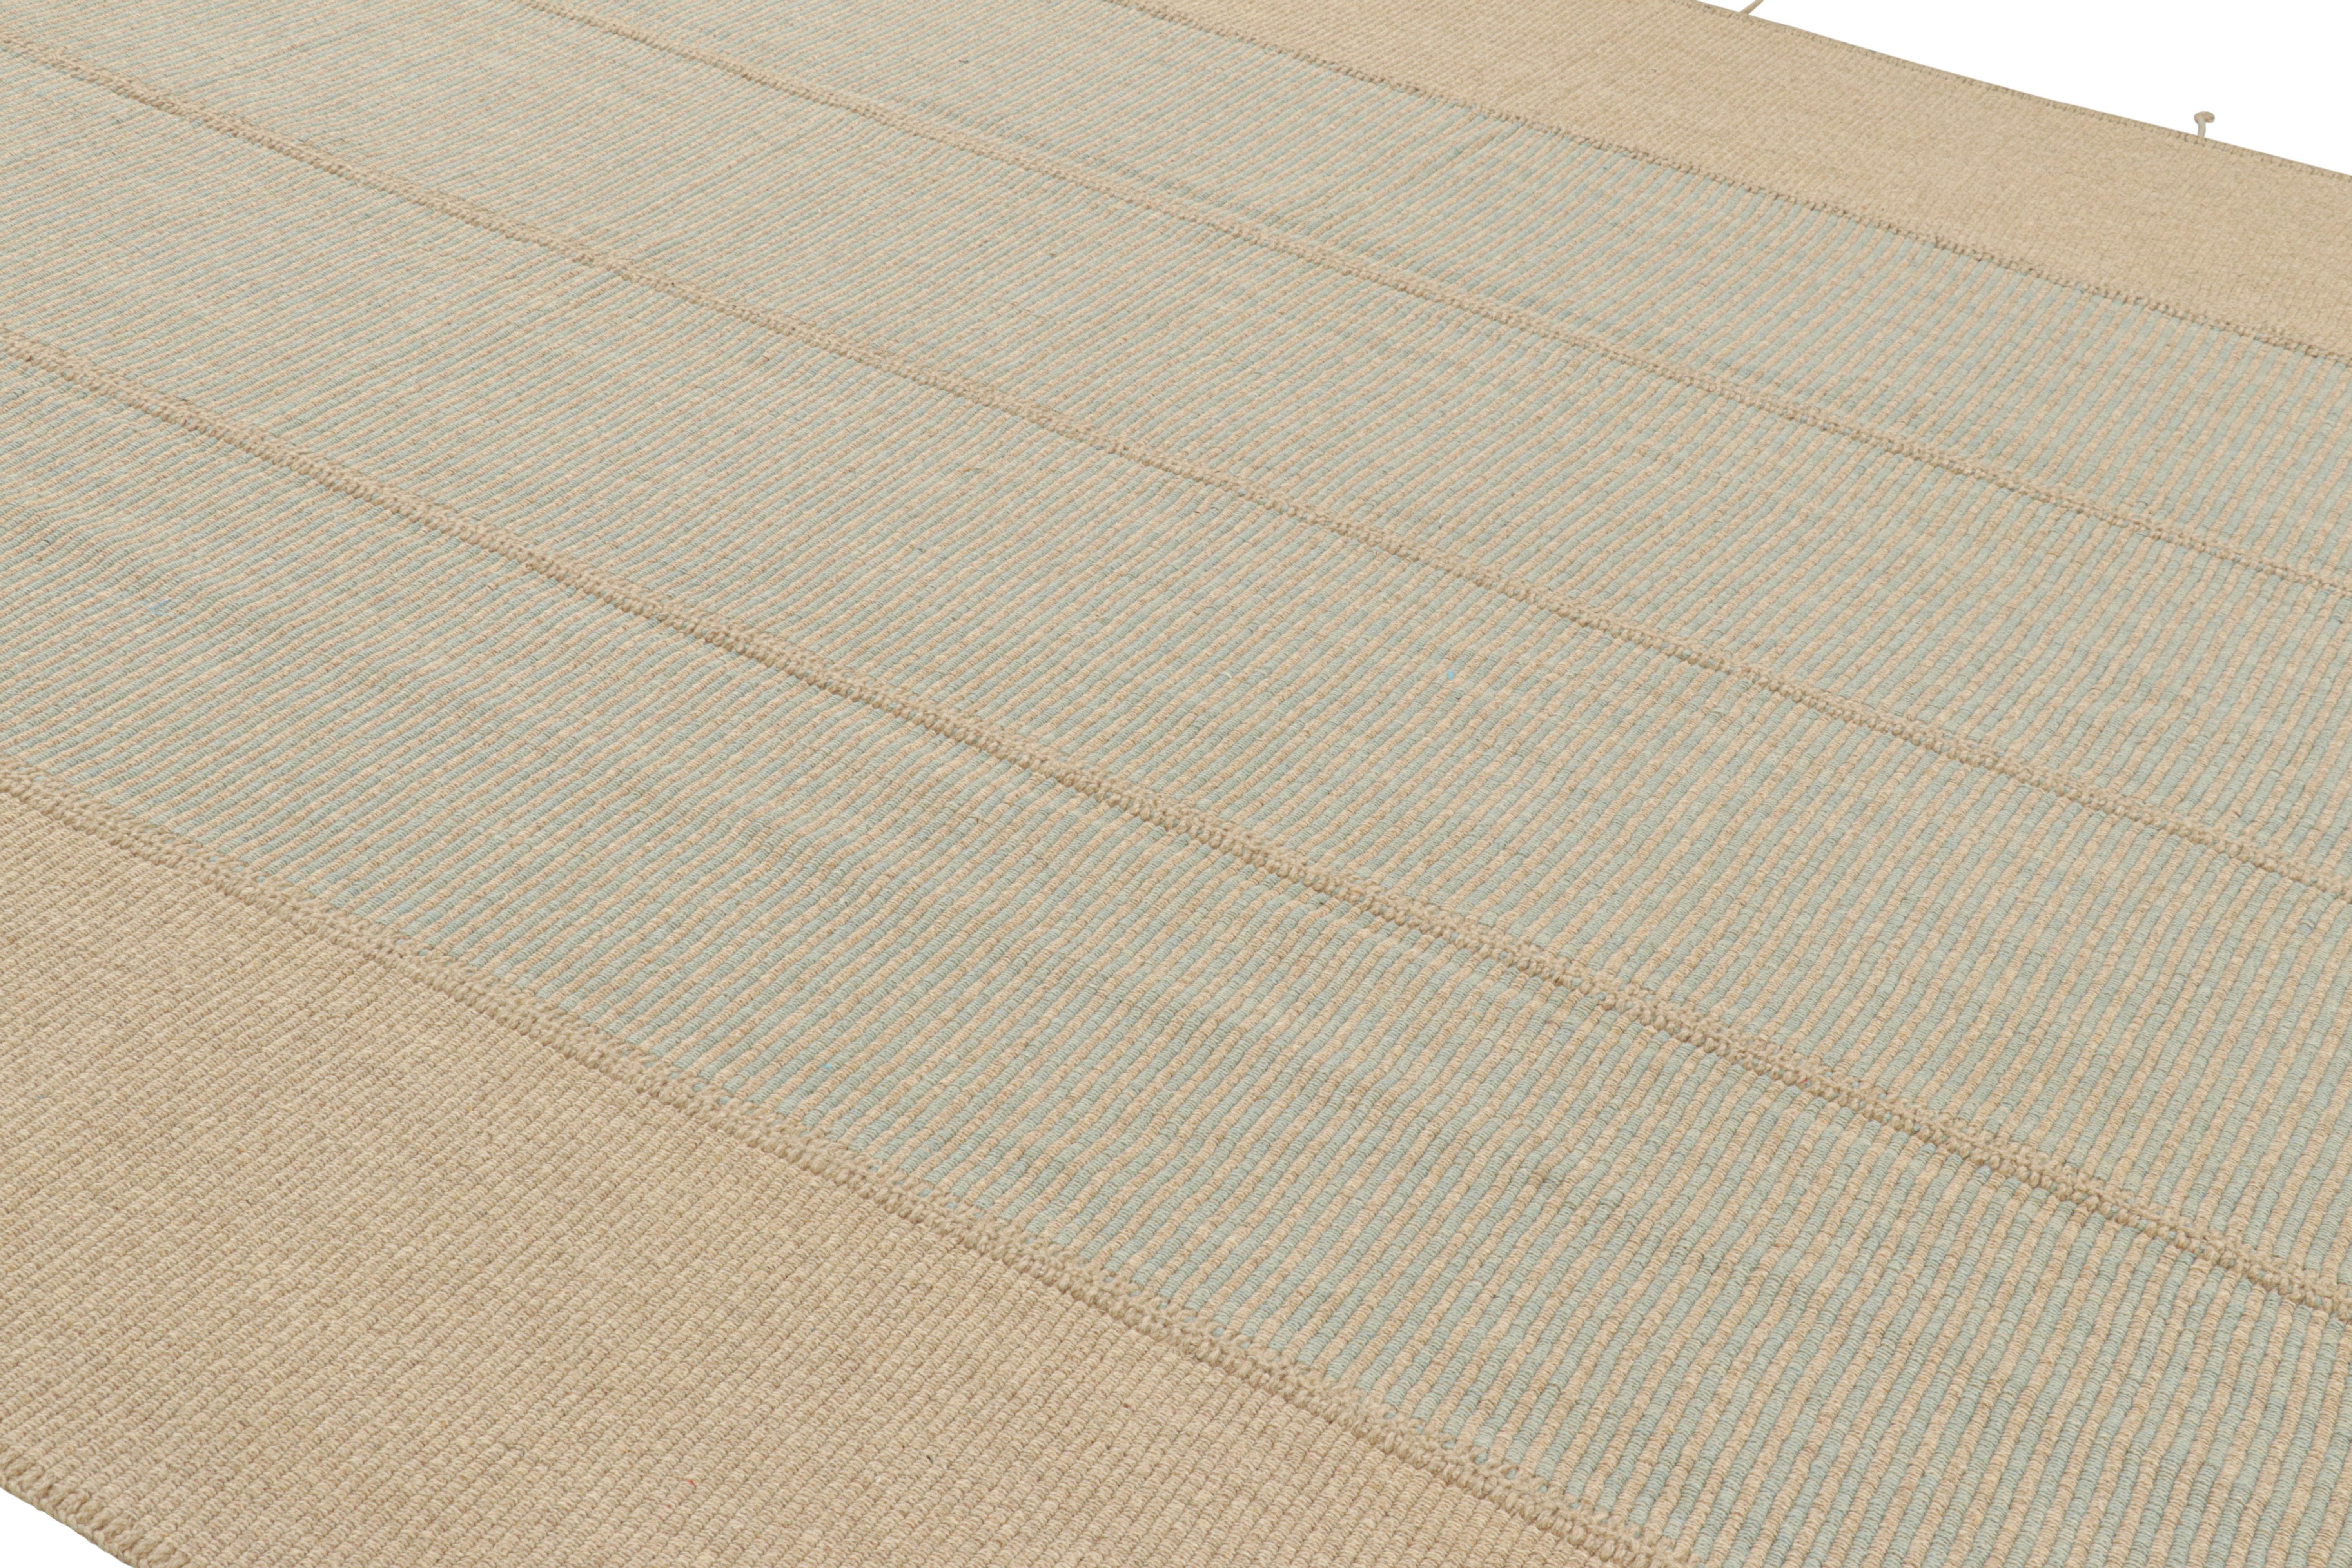 Tissé à la main en laine, ce design Kilim 11x15 fait partie d'une nouvelle collection contemporaine inventive à tissage plat de Rug & Kilim.

Sur le Design : 

Surnommée 